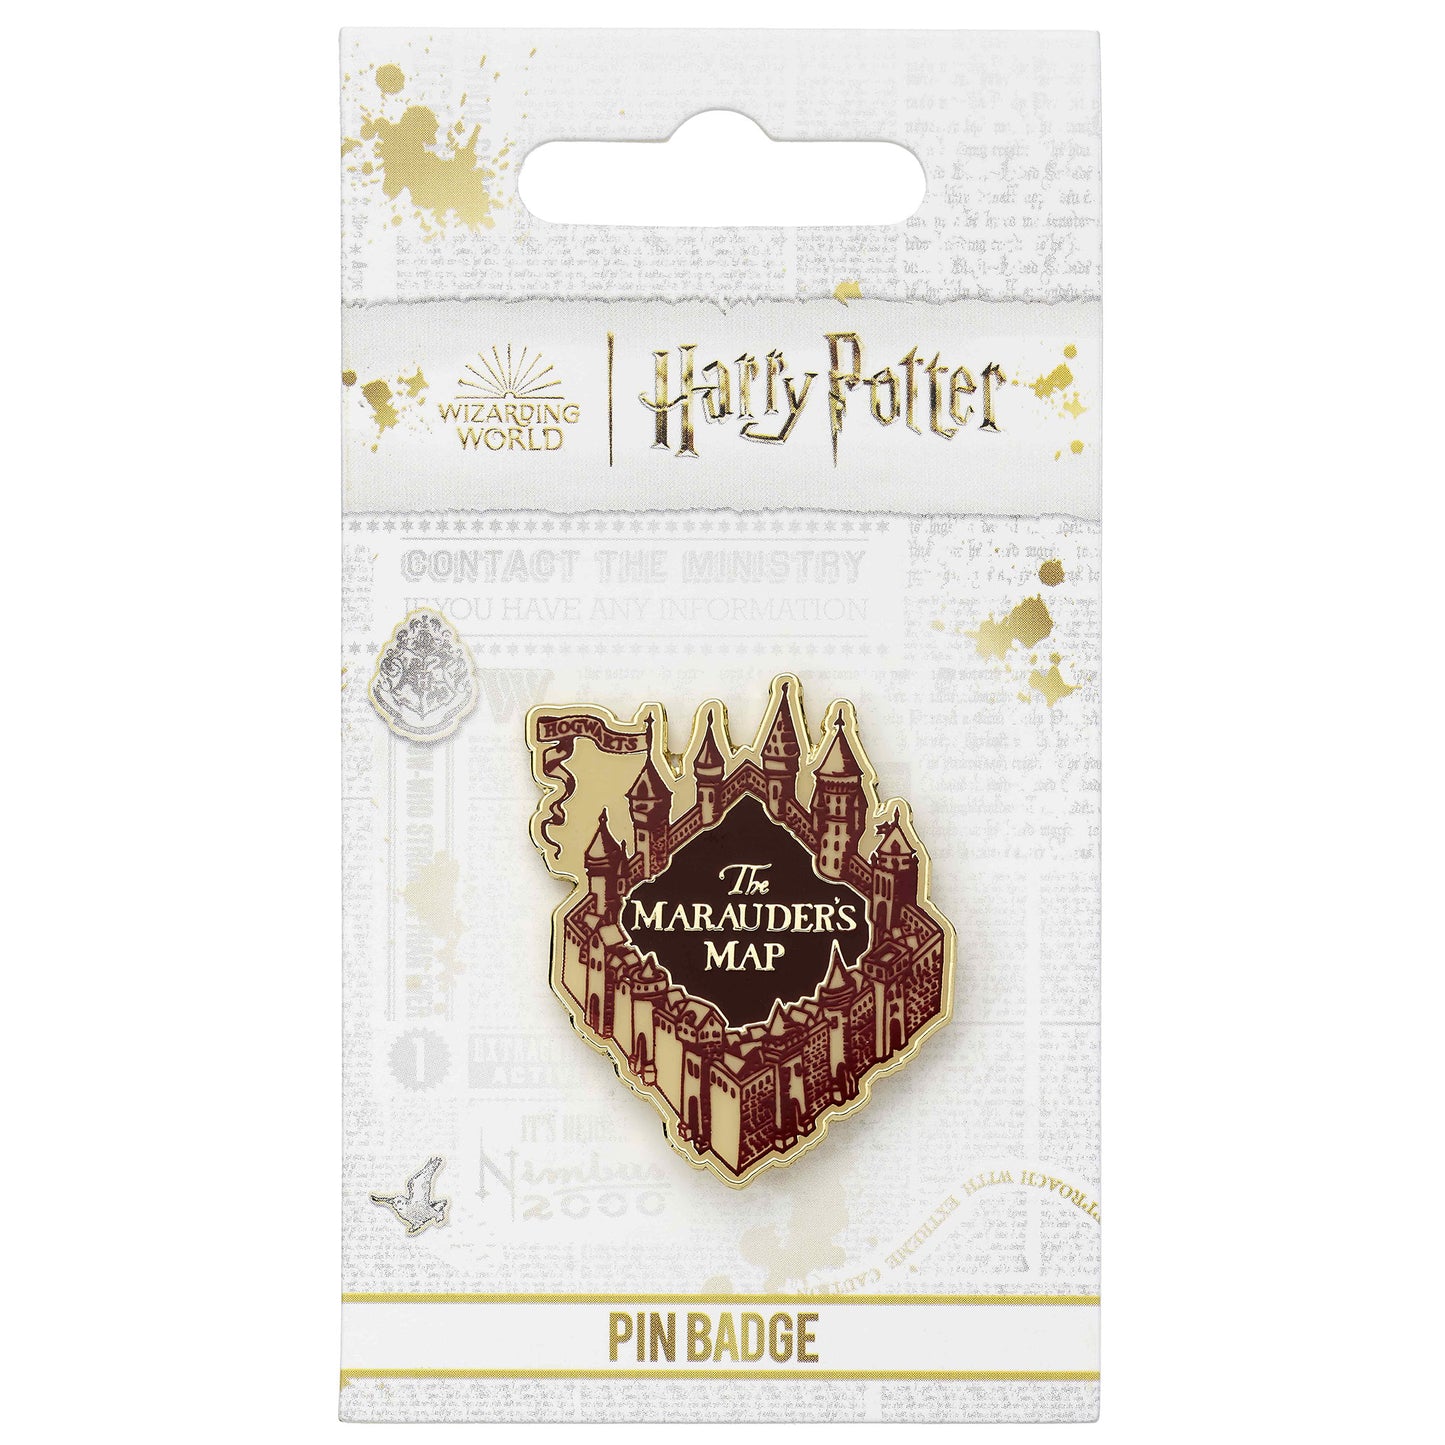 Insigne d'épingle de livre de fabrication de potions avancées Harry Potter